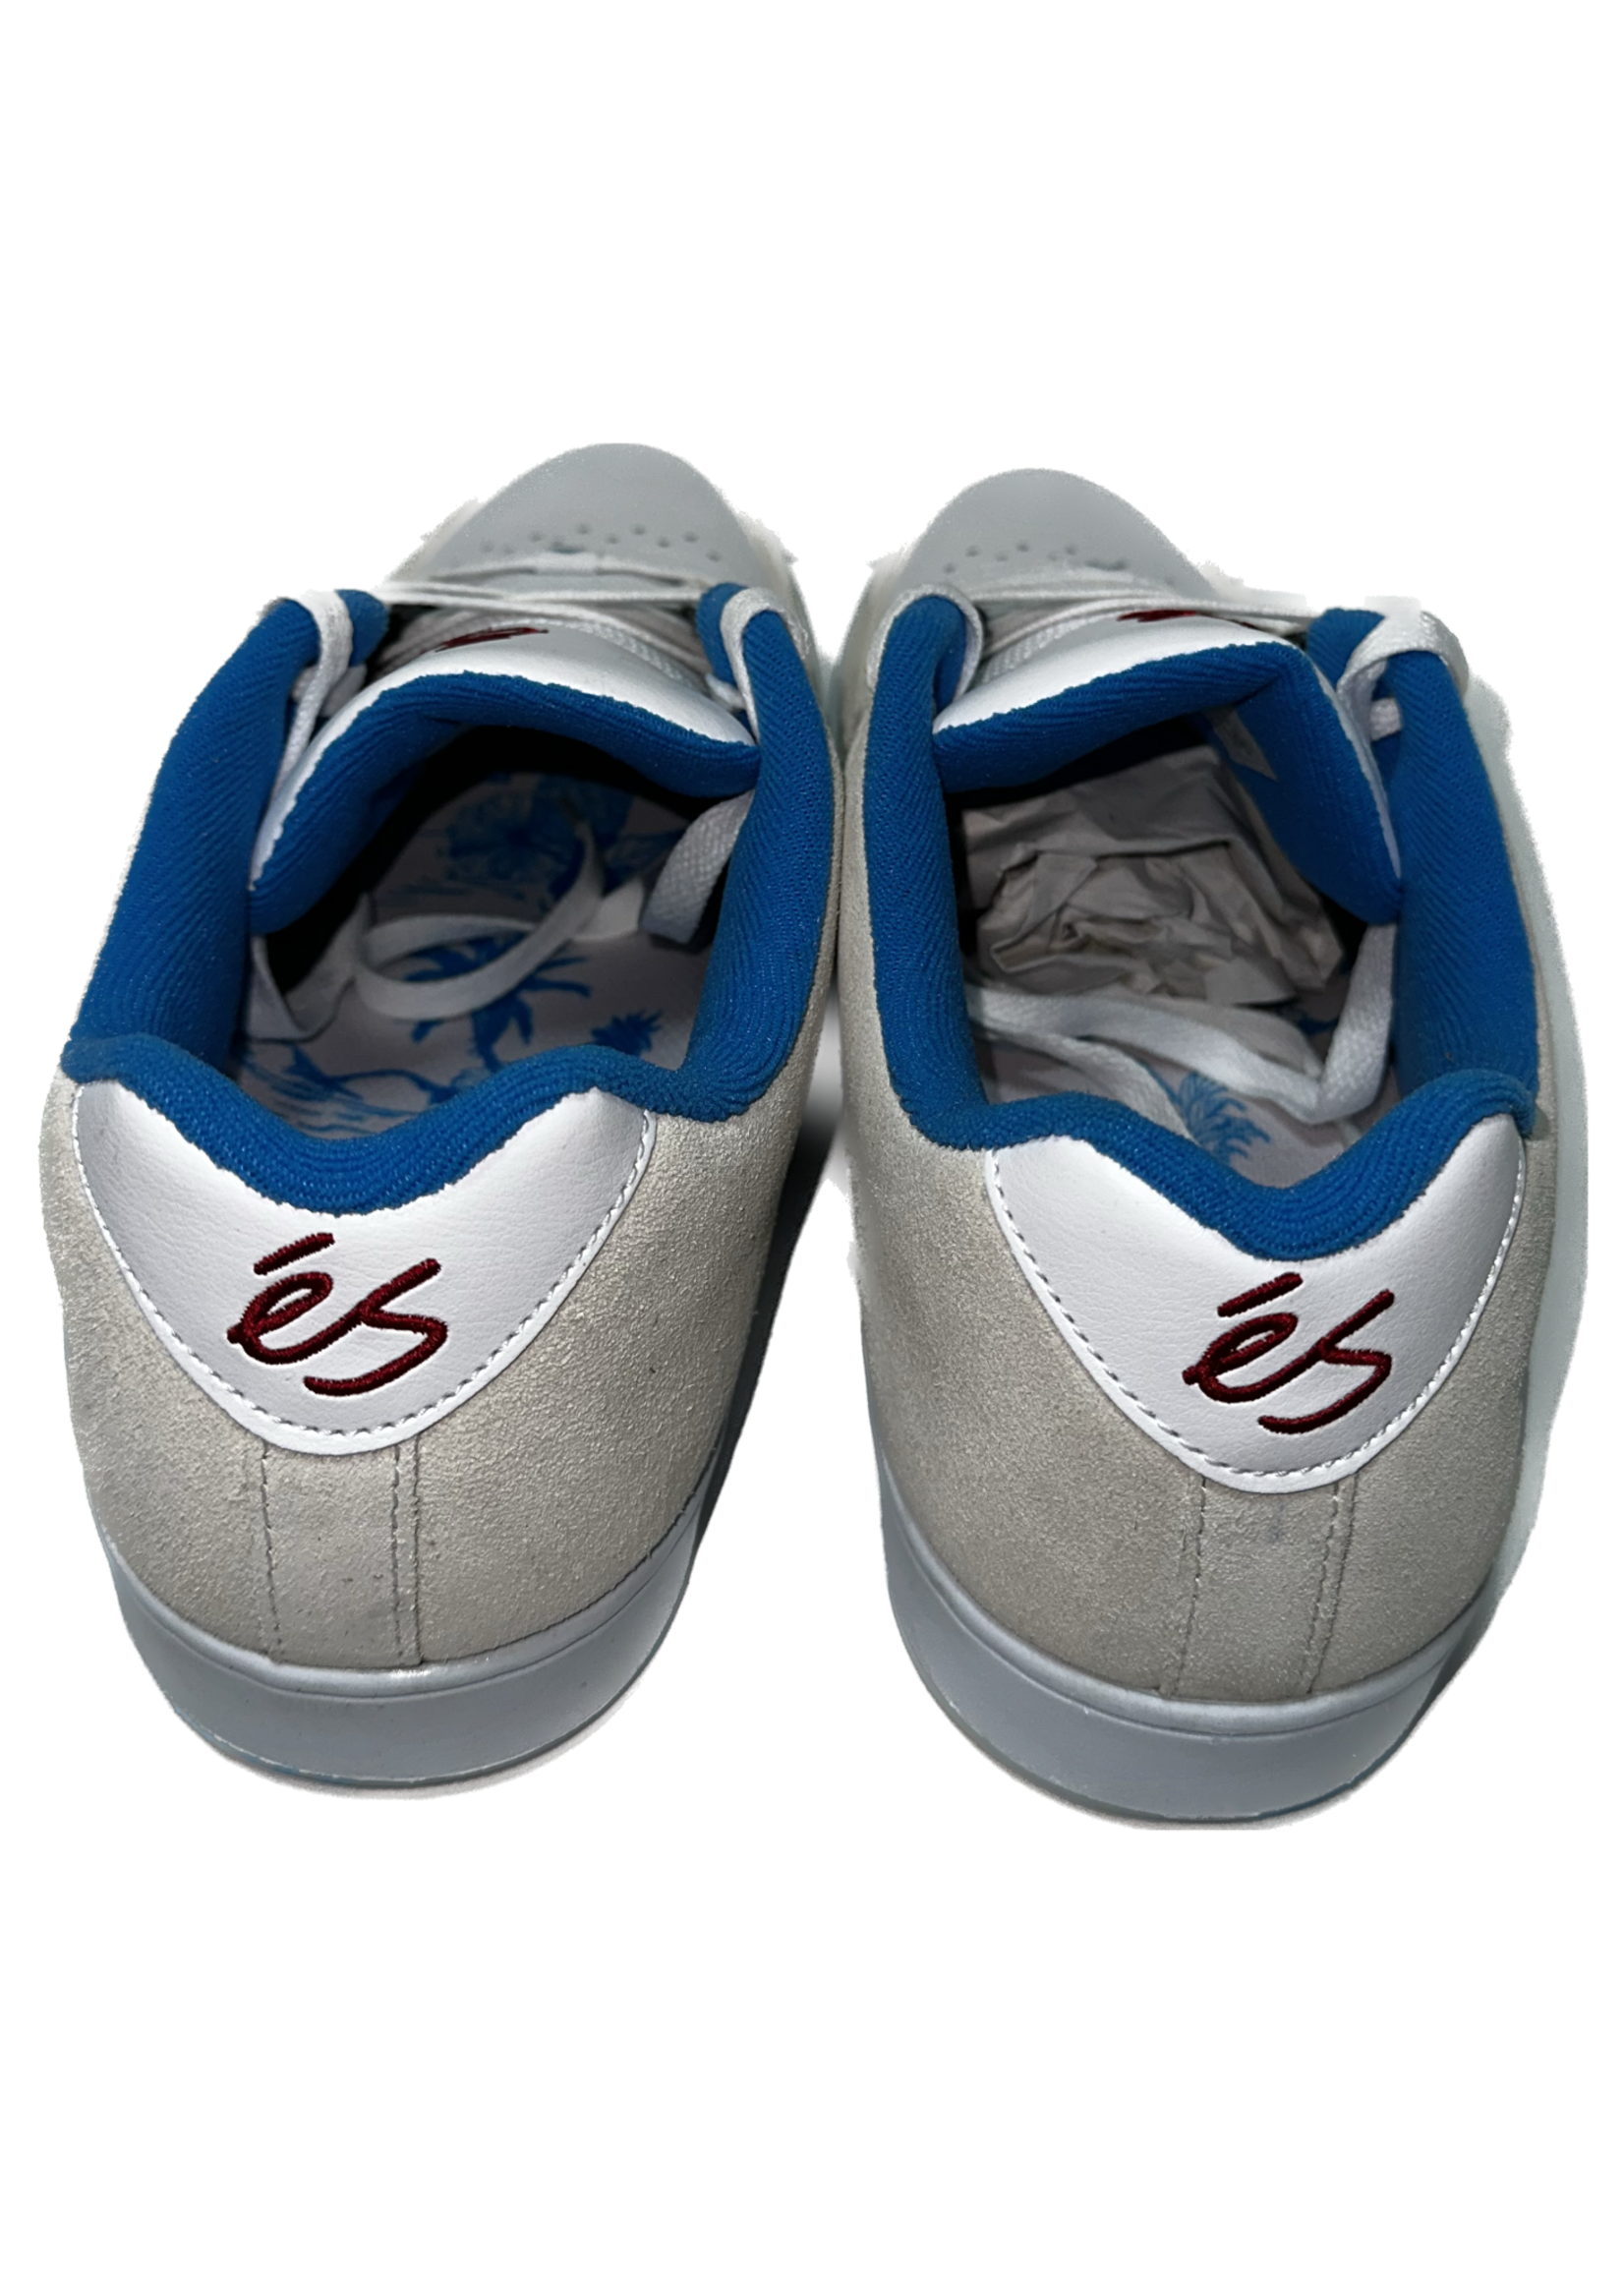 eS Shoes éS - Accel Slim - White/Blue/Red Size 12USM's